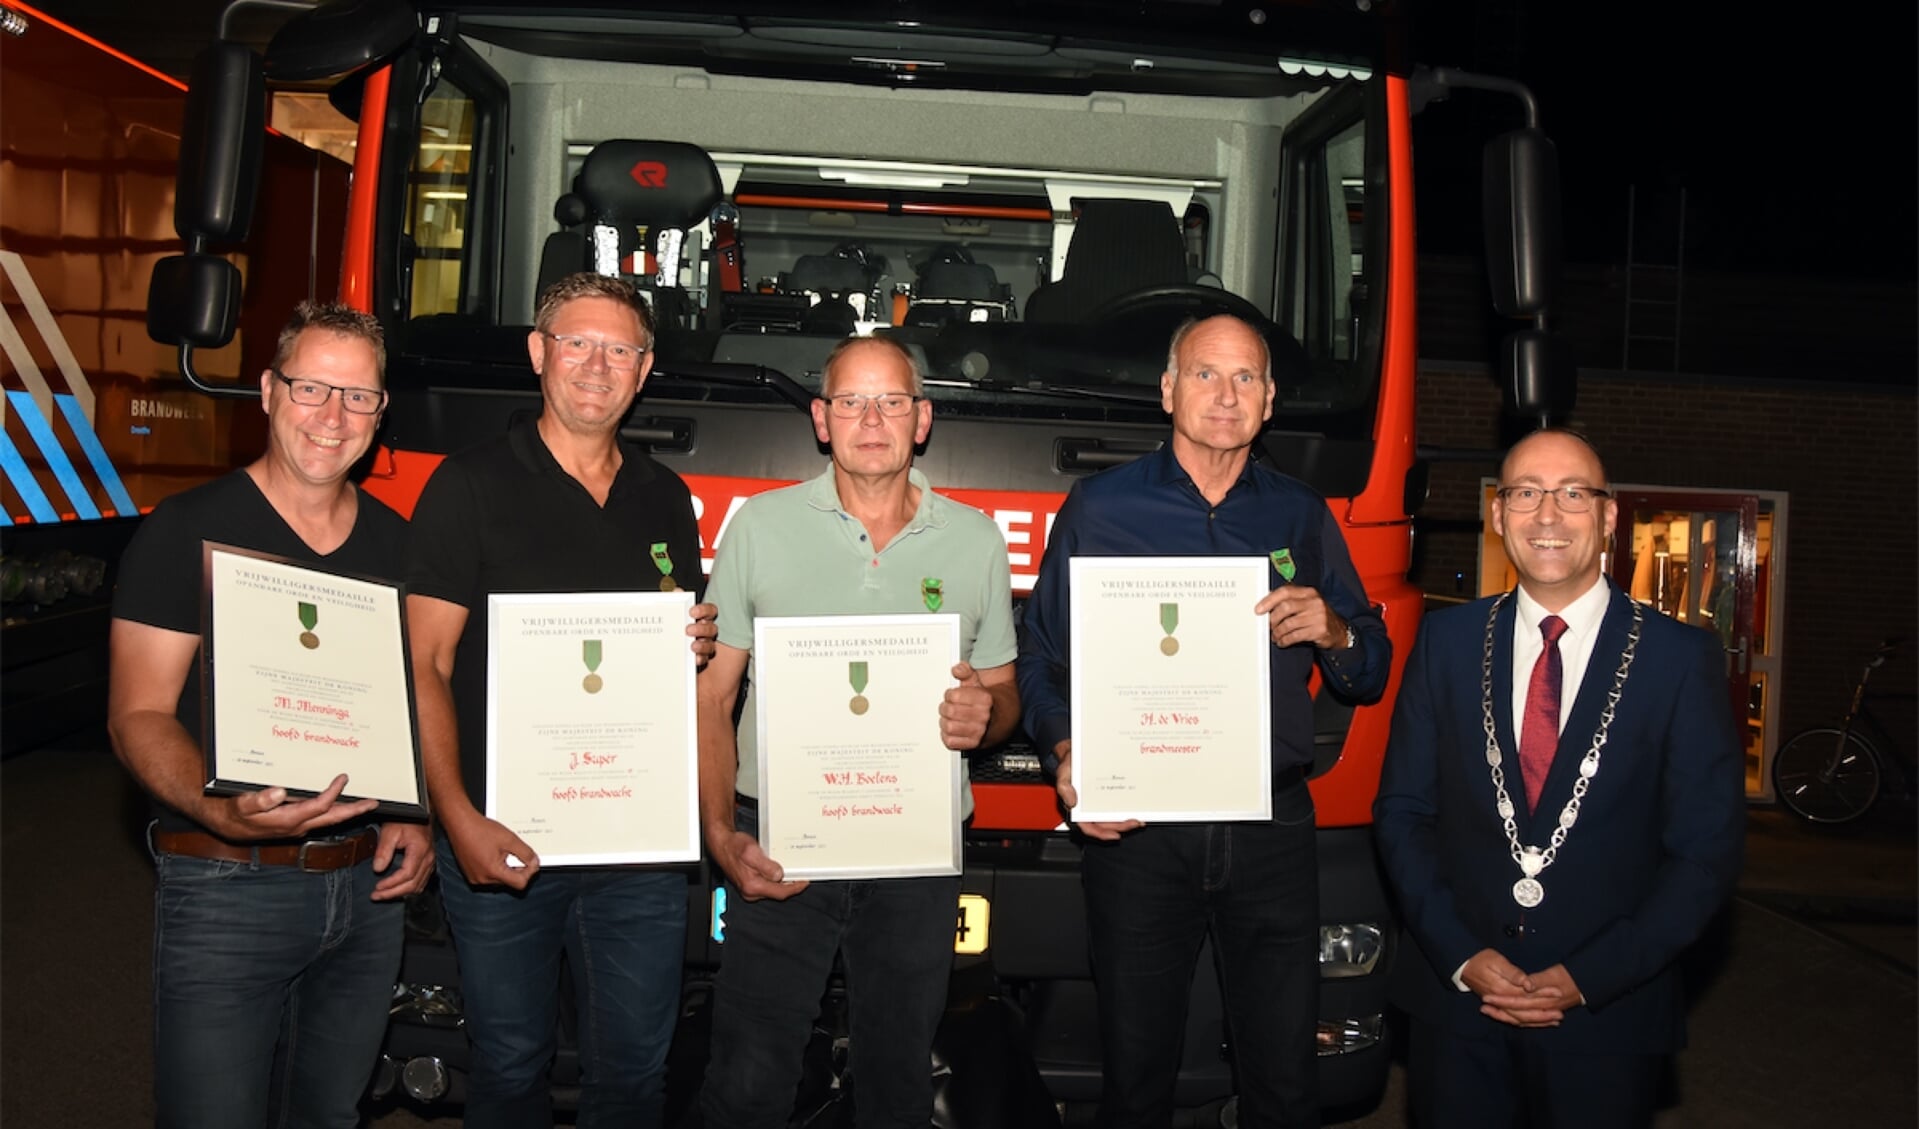 De vertrekkende brandweerlieden Martin Menninga, Jacob Supèr, Wim Boelens en Hink de Vries met burgemeester Anno Wietze Hiemstra. (foto Arjen Kuiper)